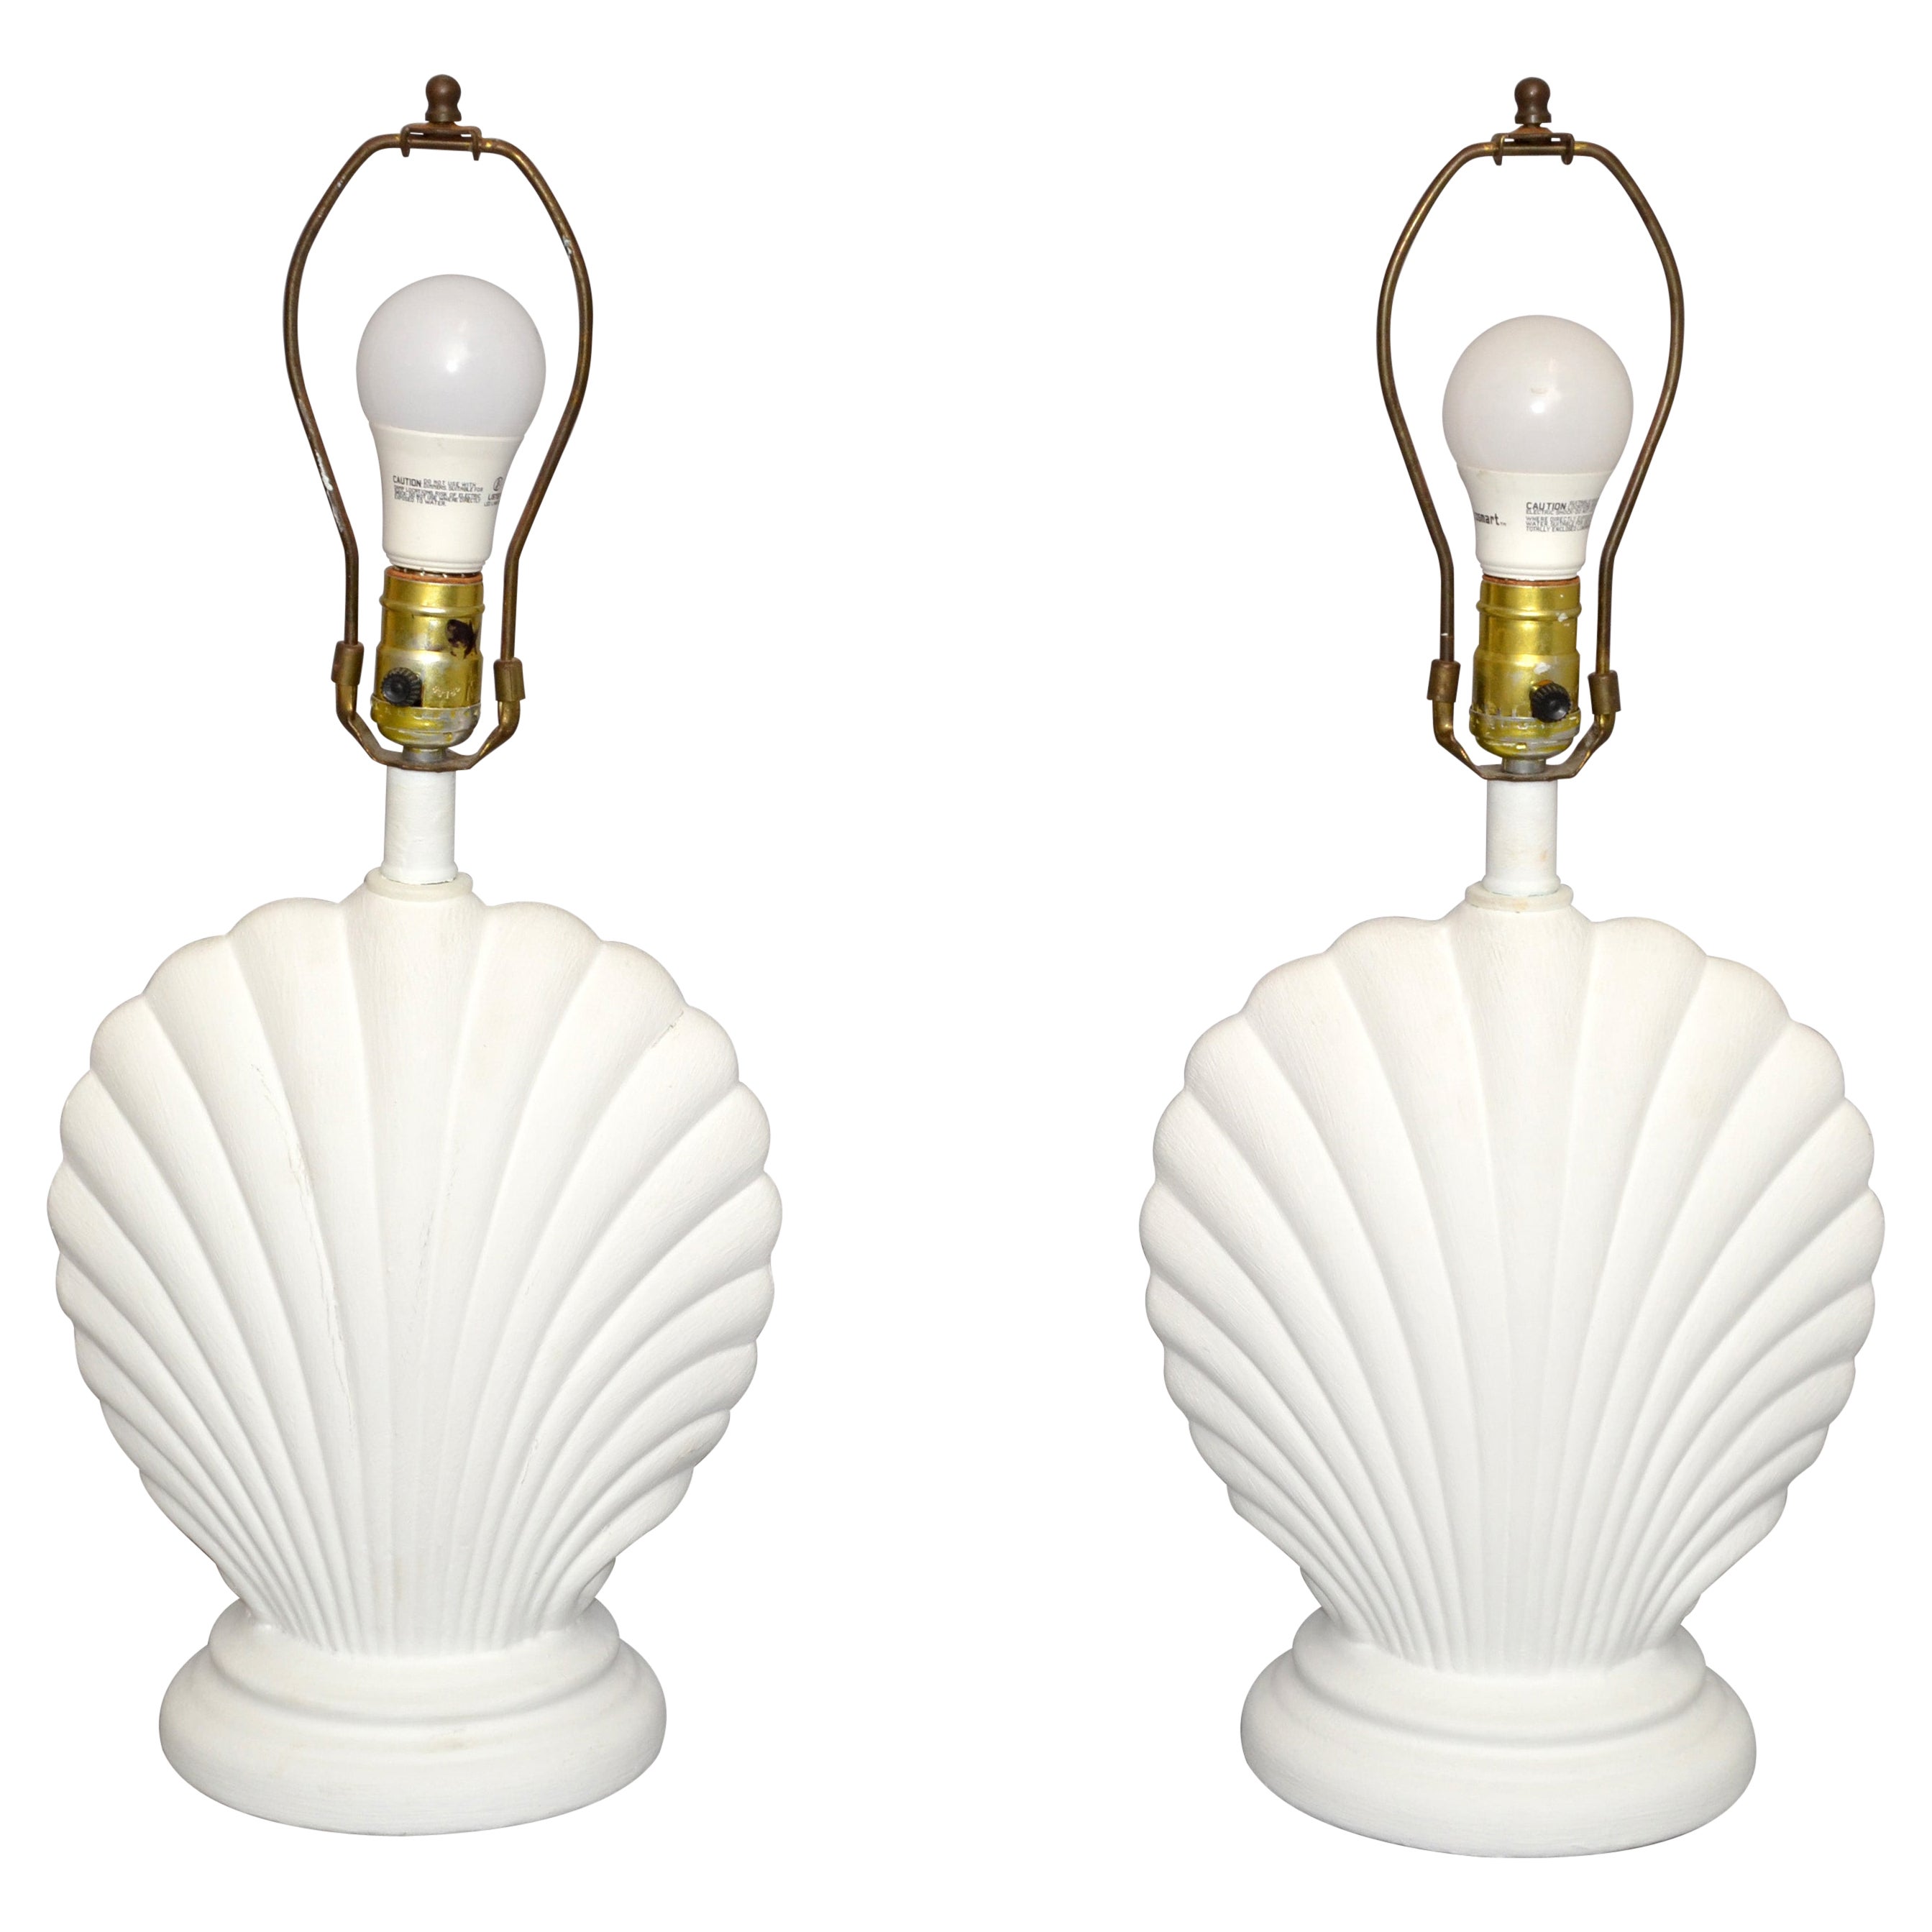 Paire de lampes de bureau en plâtre en forme de coquillage de style Hollywood Regency, finition gesso